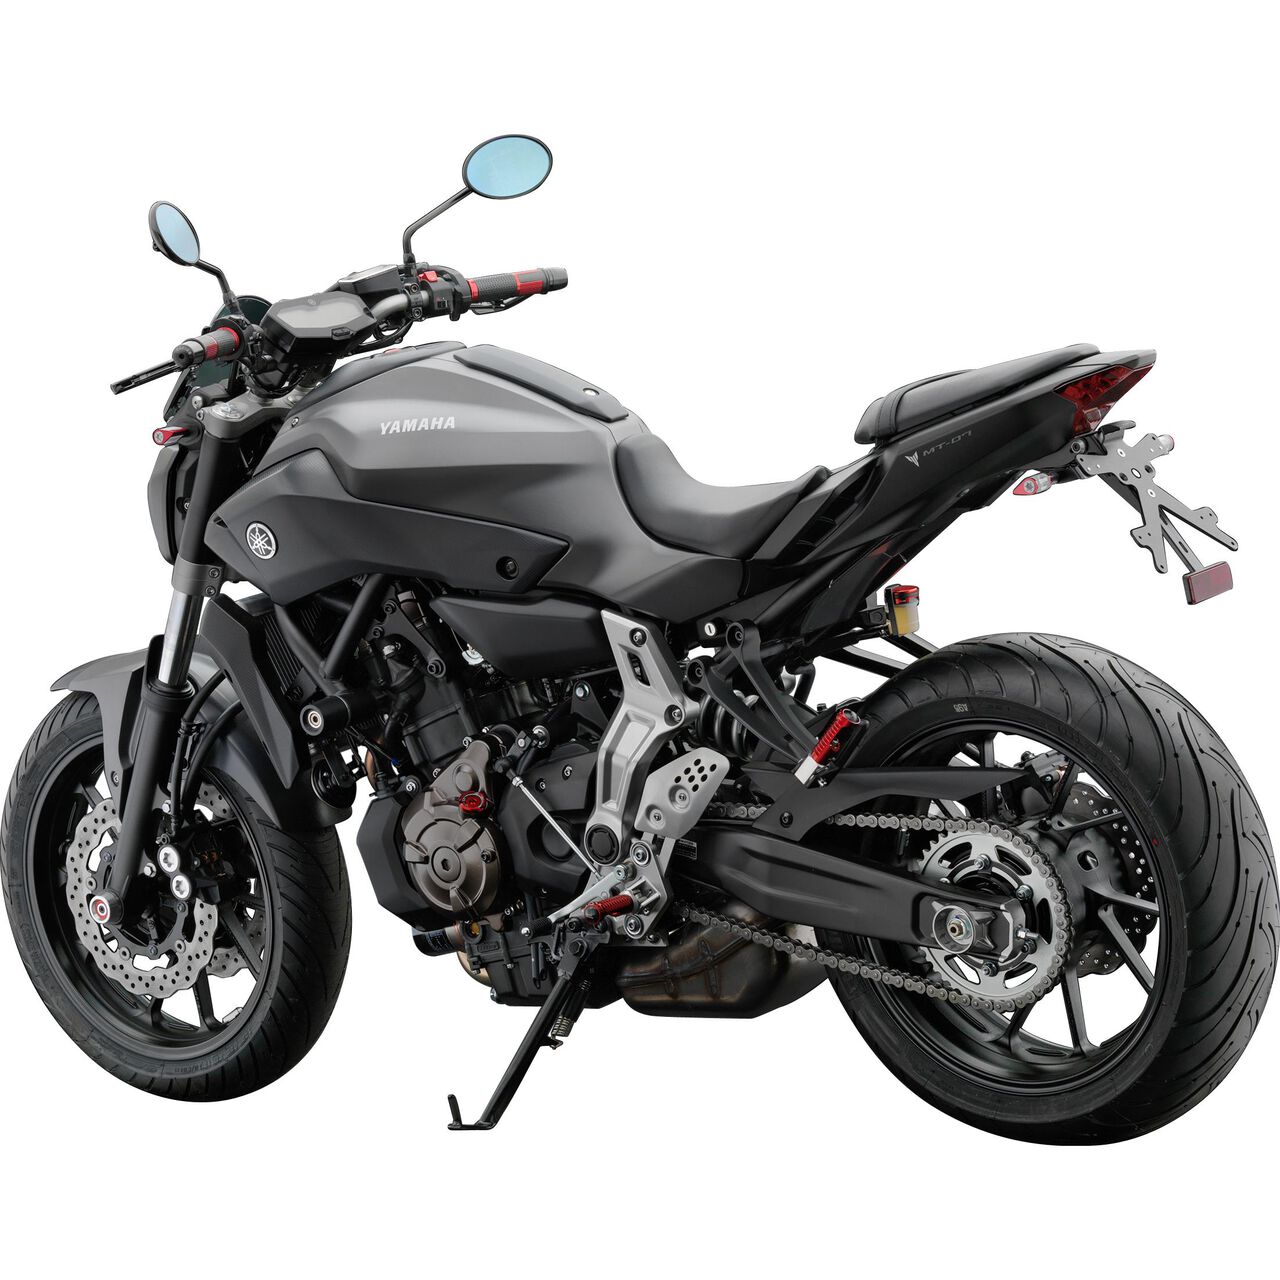 Motorrad Kennzeichen halter Universal für Yamaha MT07 FZ07 für BMW